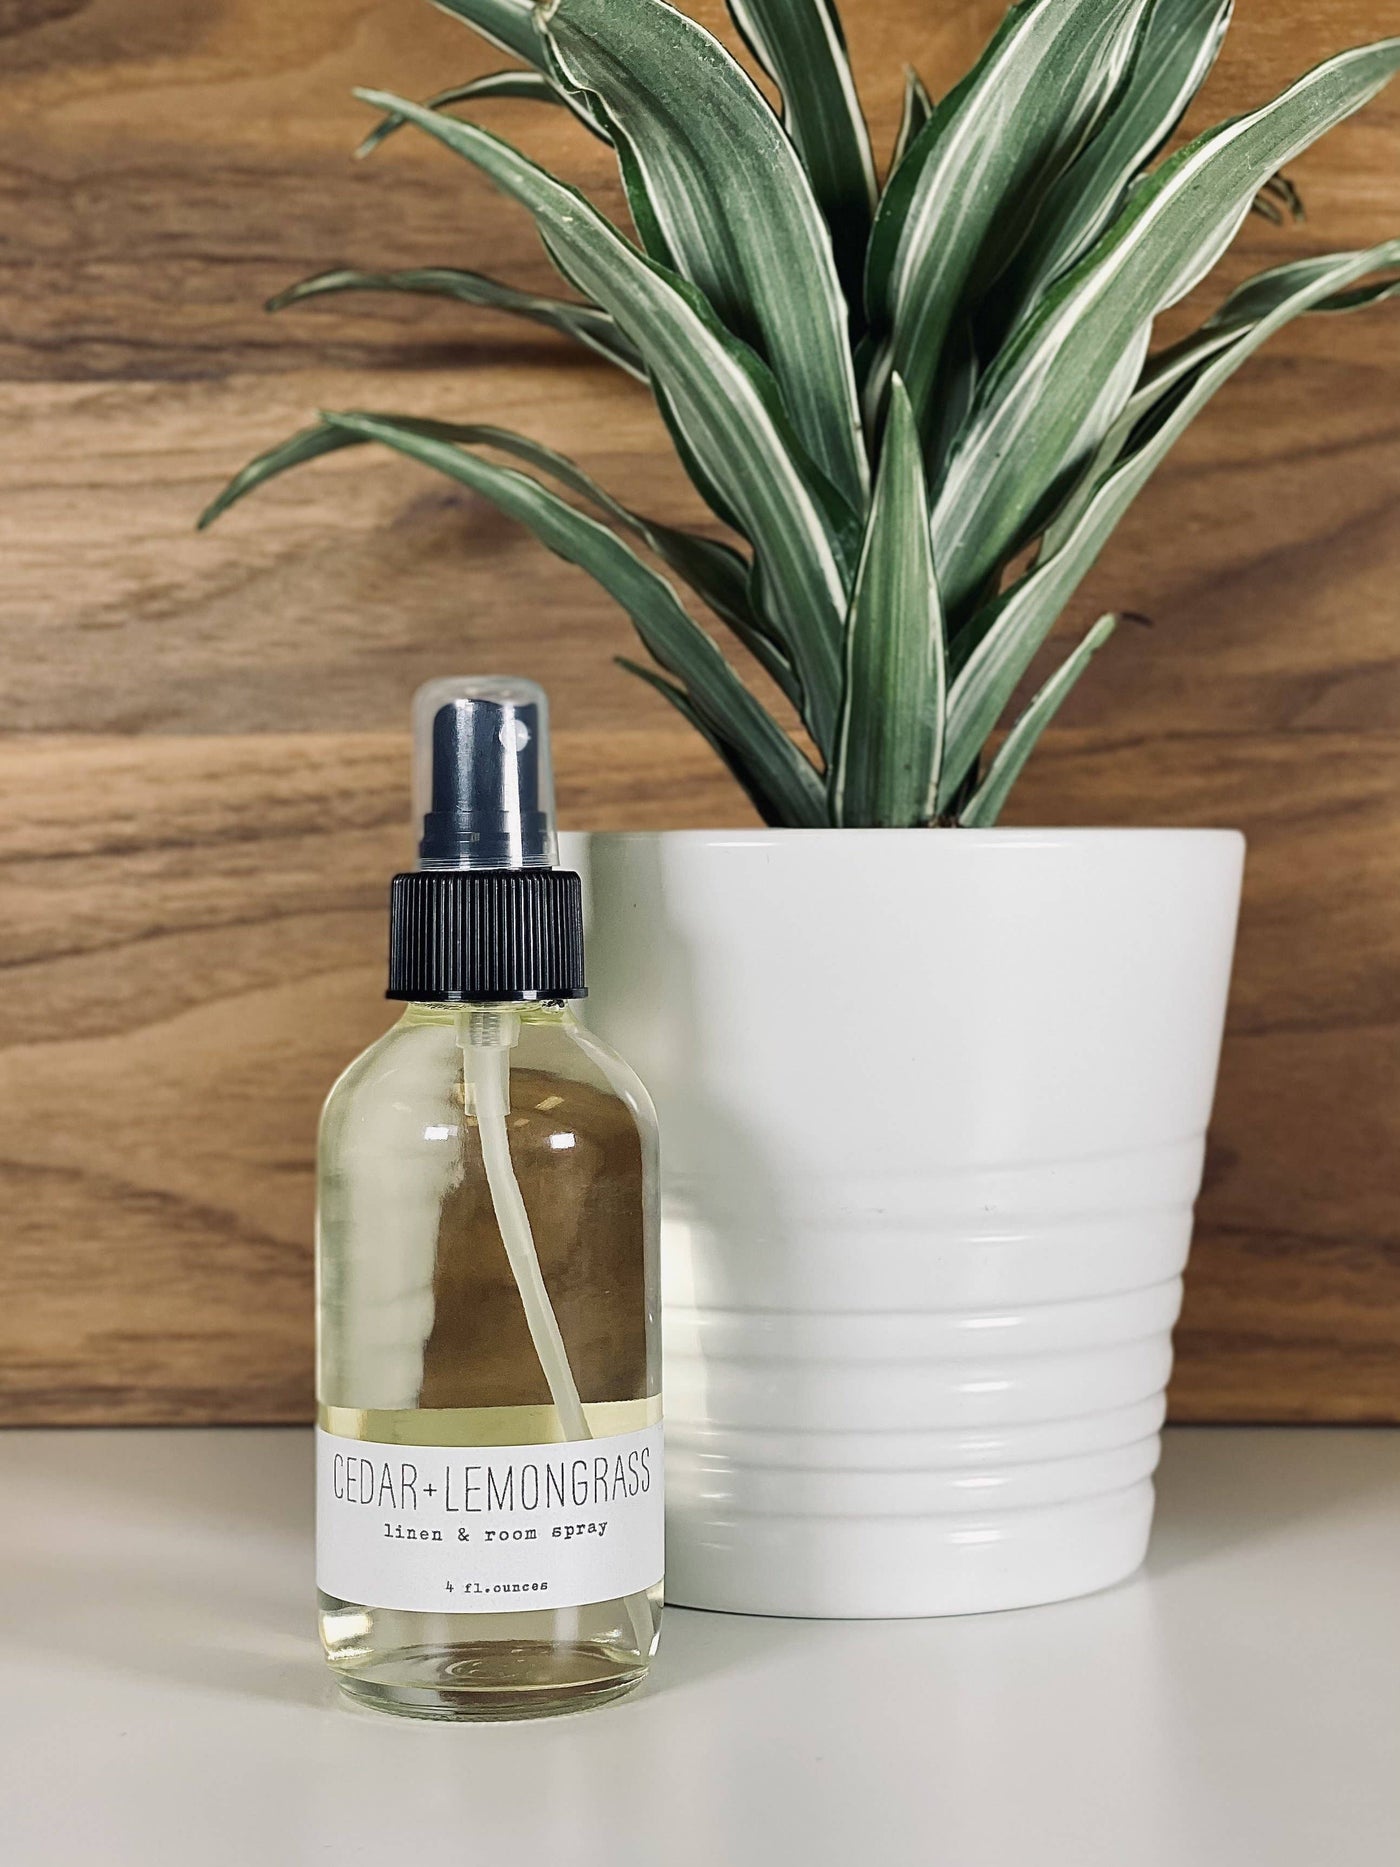 Linen & Room Spray - Cedar Lemongrass